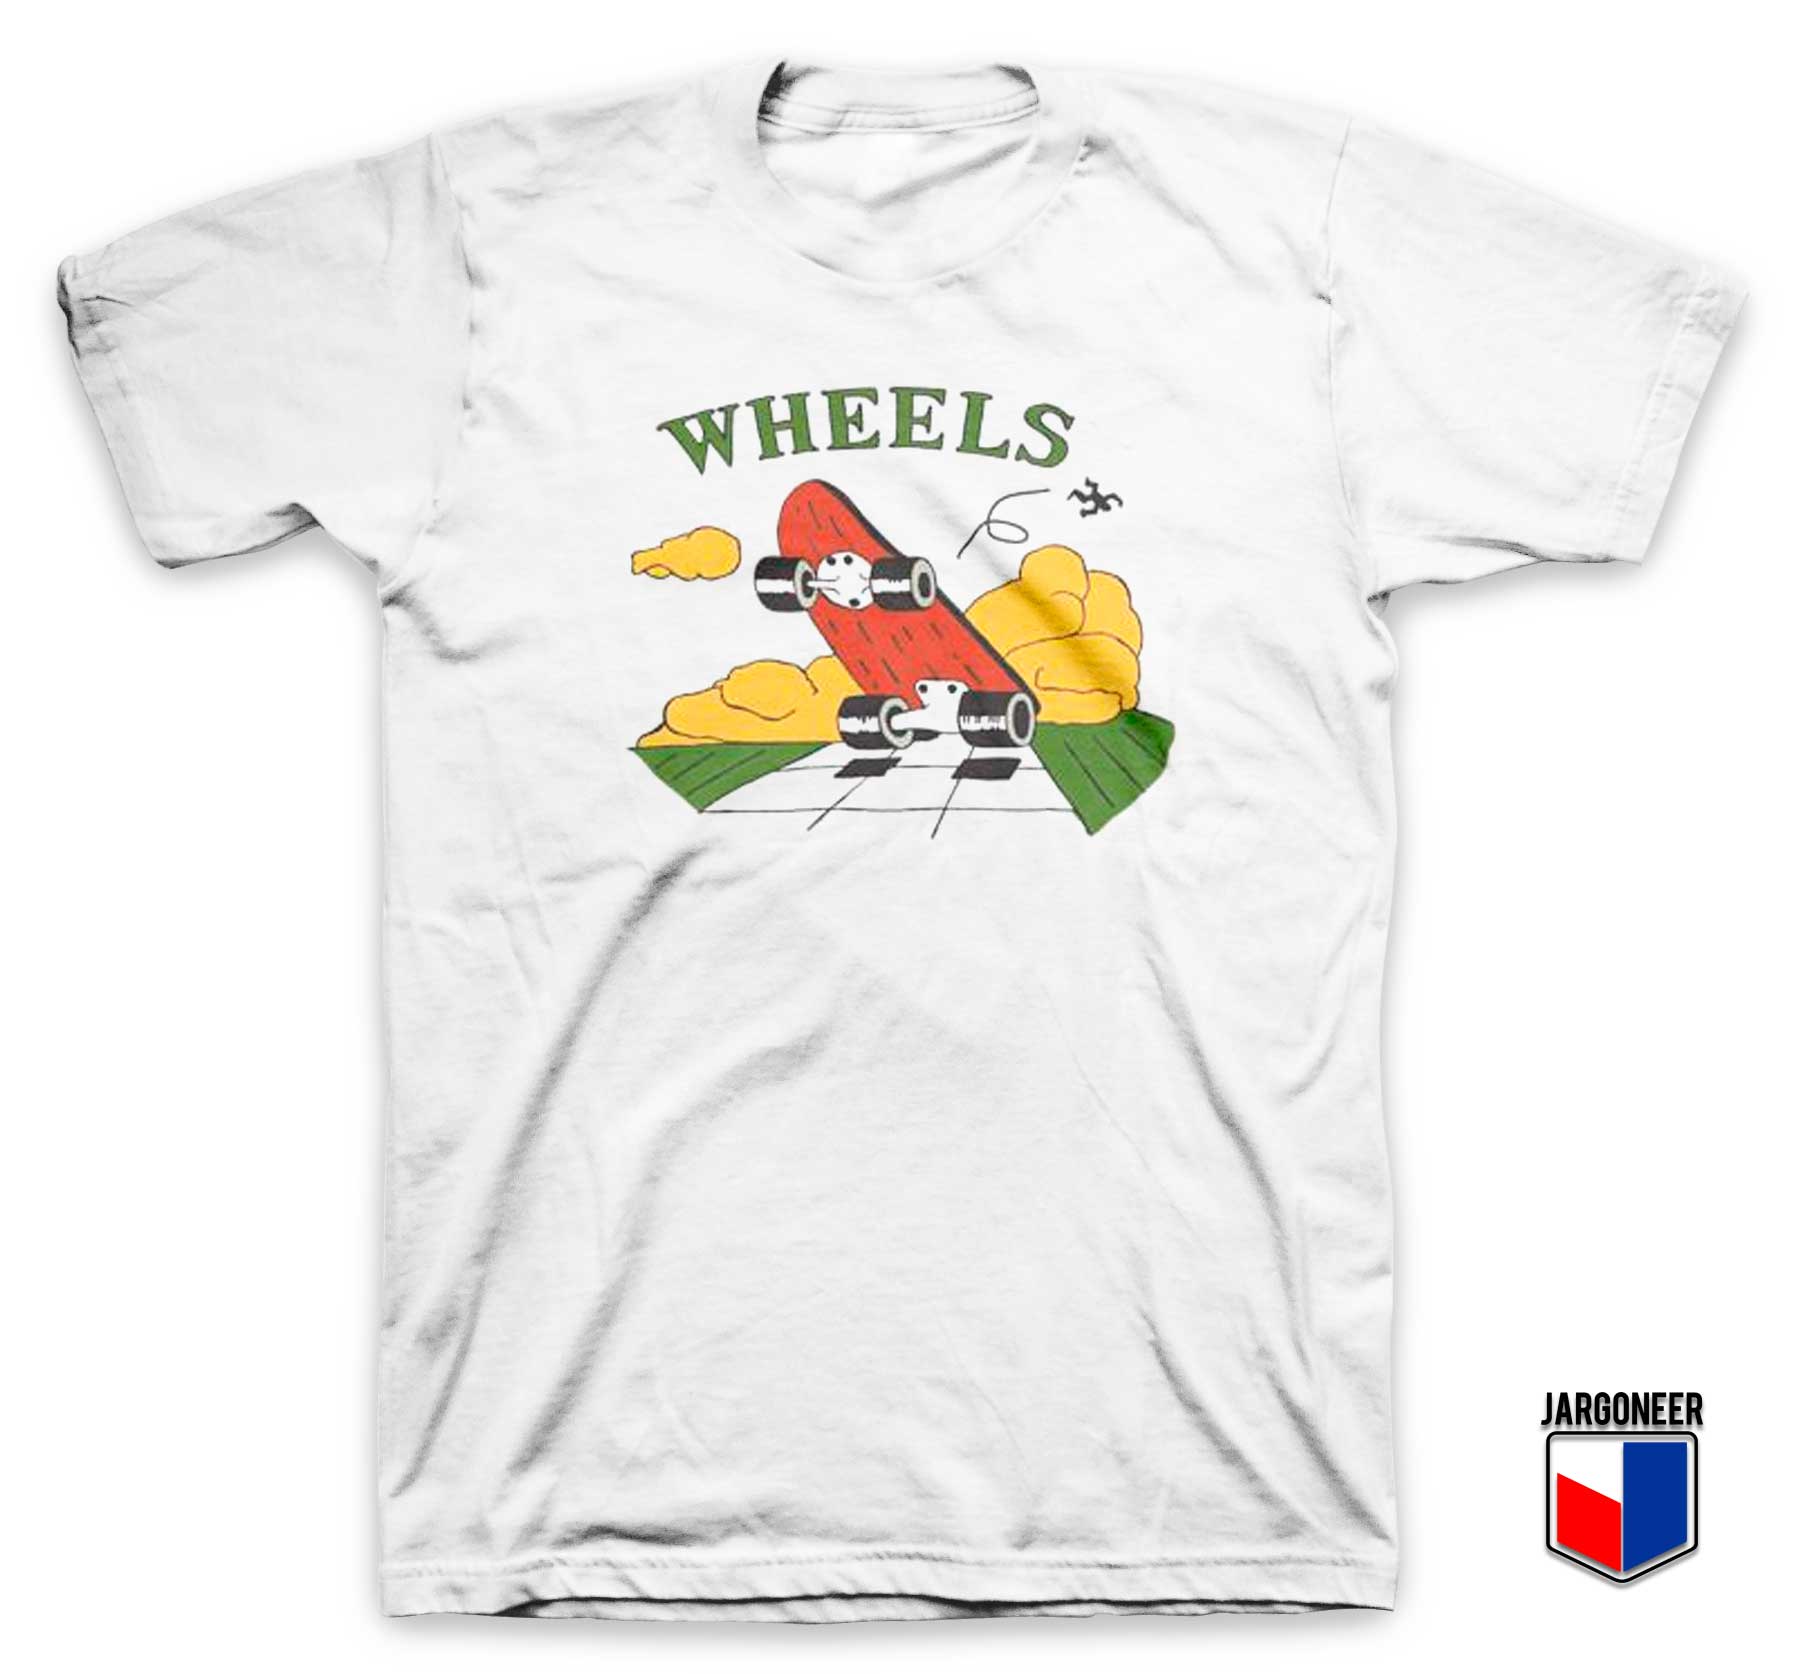 Skate Wheels T Shirt - Shop Unique Graphic Cool Shirt Designs